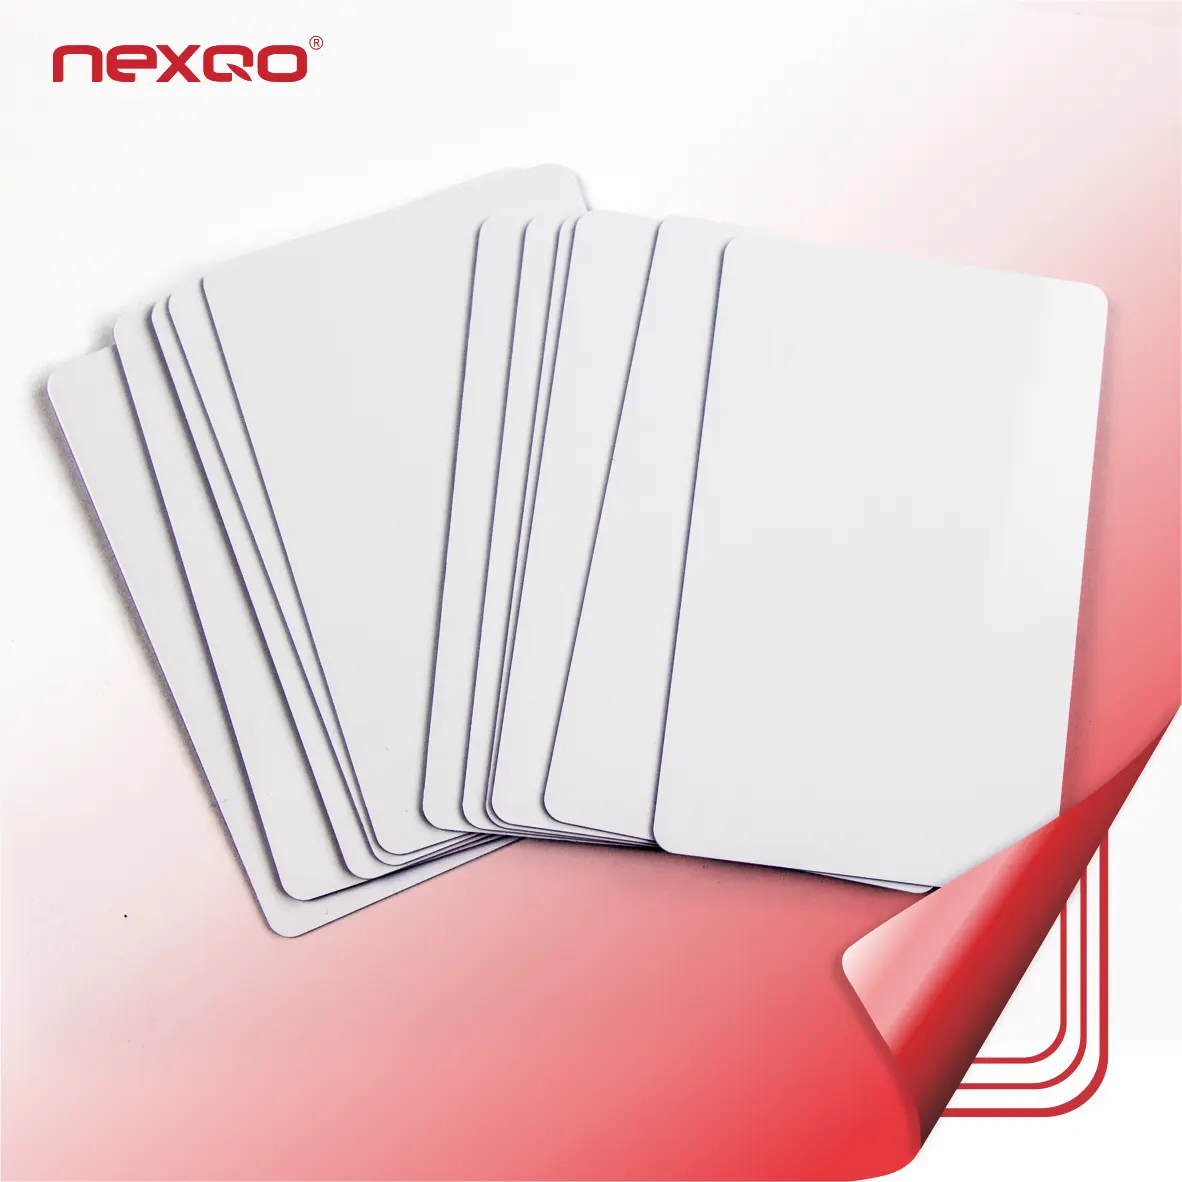 พลาสติกสีขาวเปล่าบัตรพีวีซีขนาดบัตรเครดิตที่มี F08ชิปสำหรับการควบคุมการเข้าถึงบัตร RFID